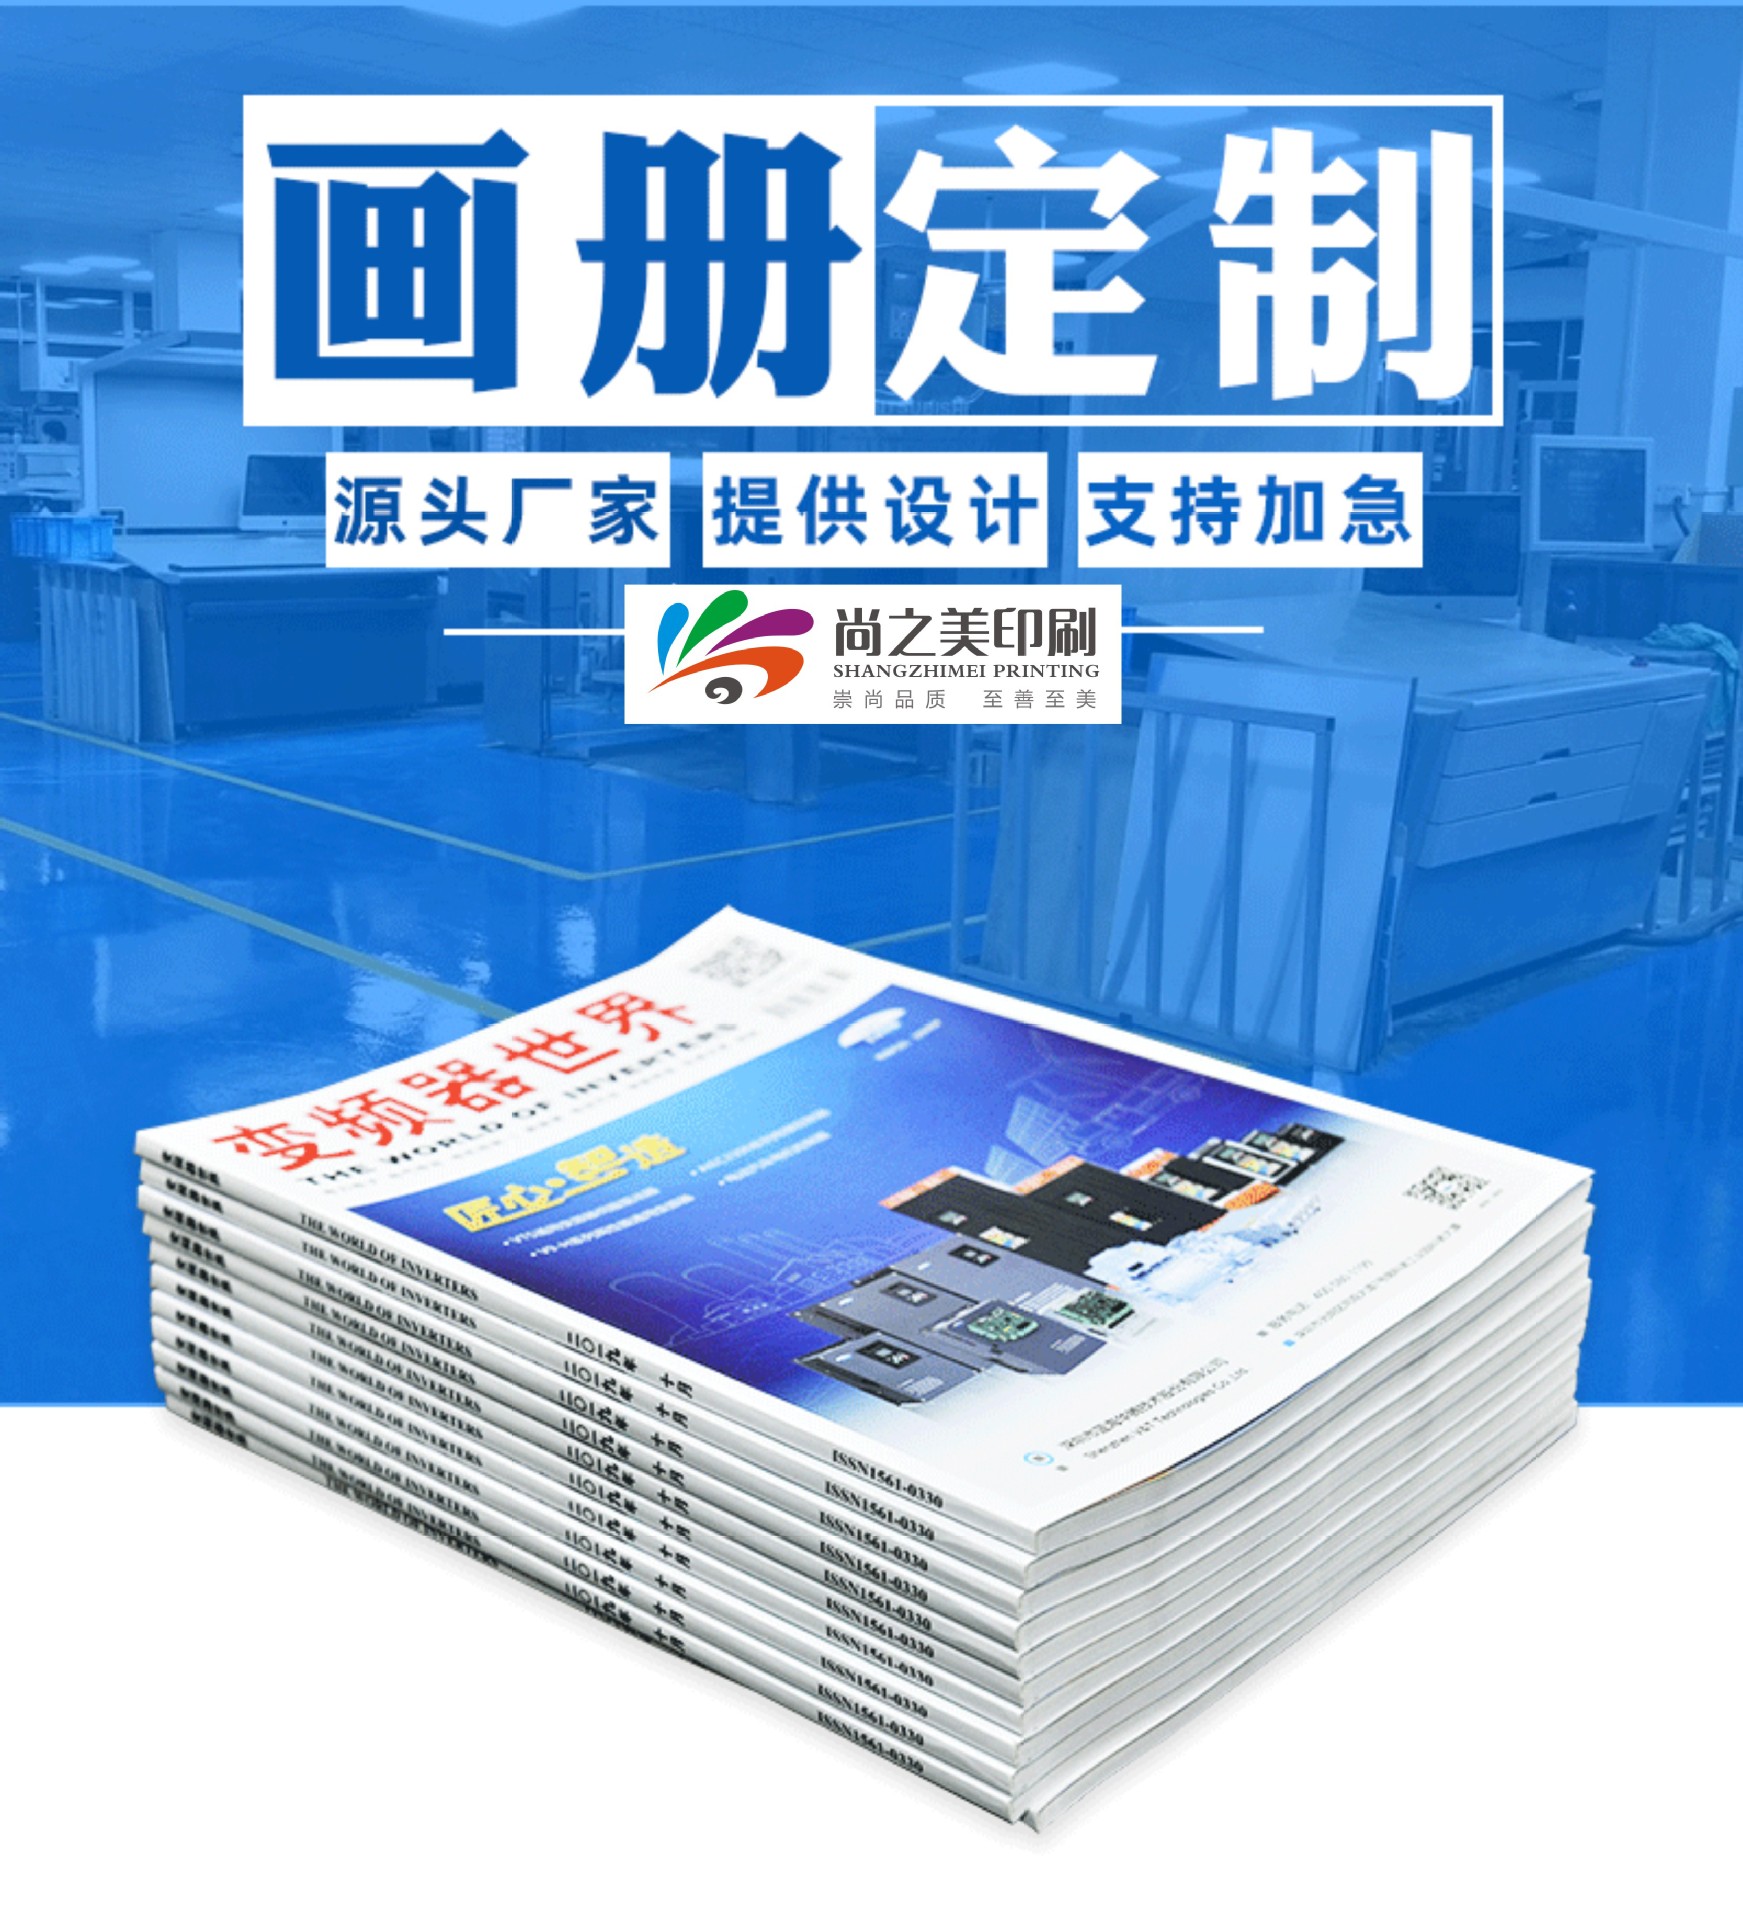 杭州印刷宣传画册|画册设计公司 杭州公司宣传手册 省时省力